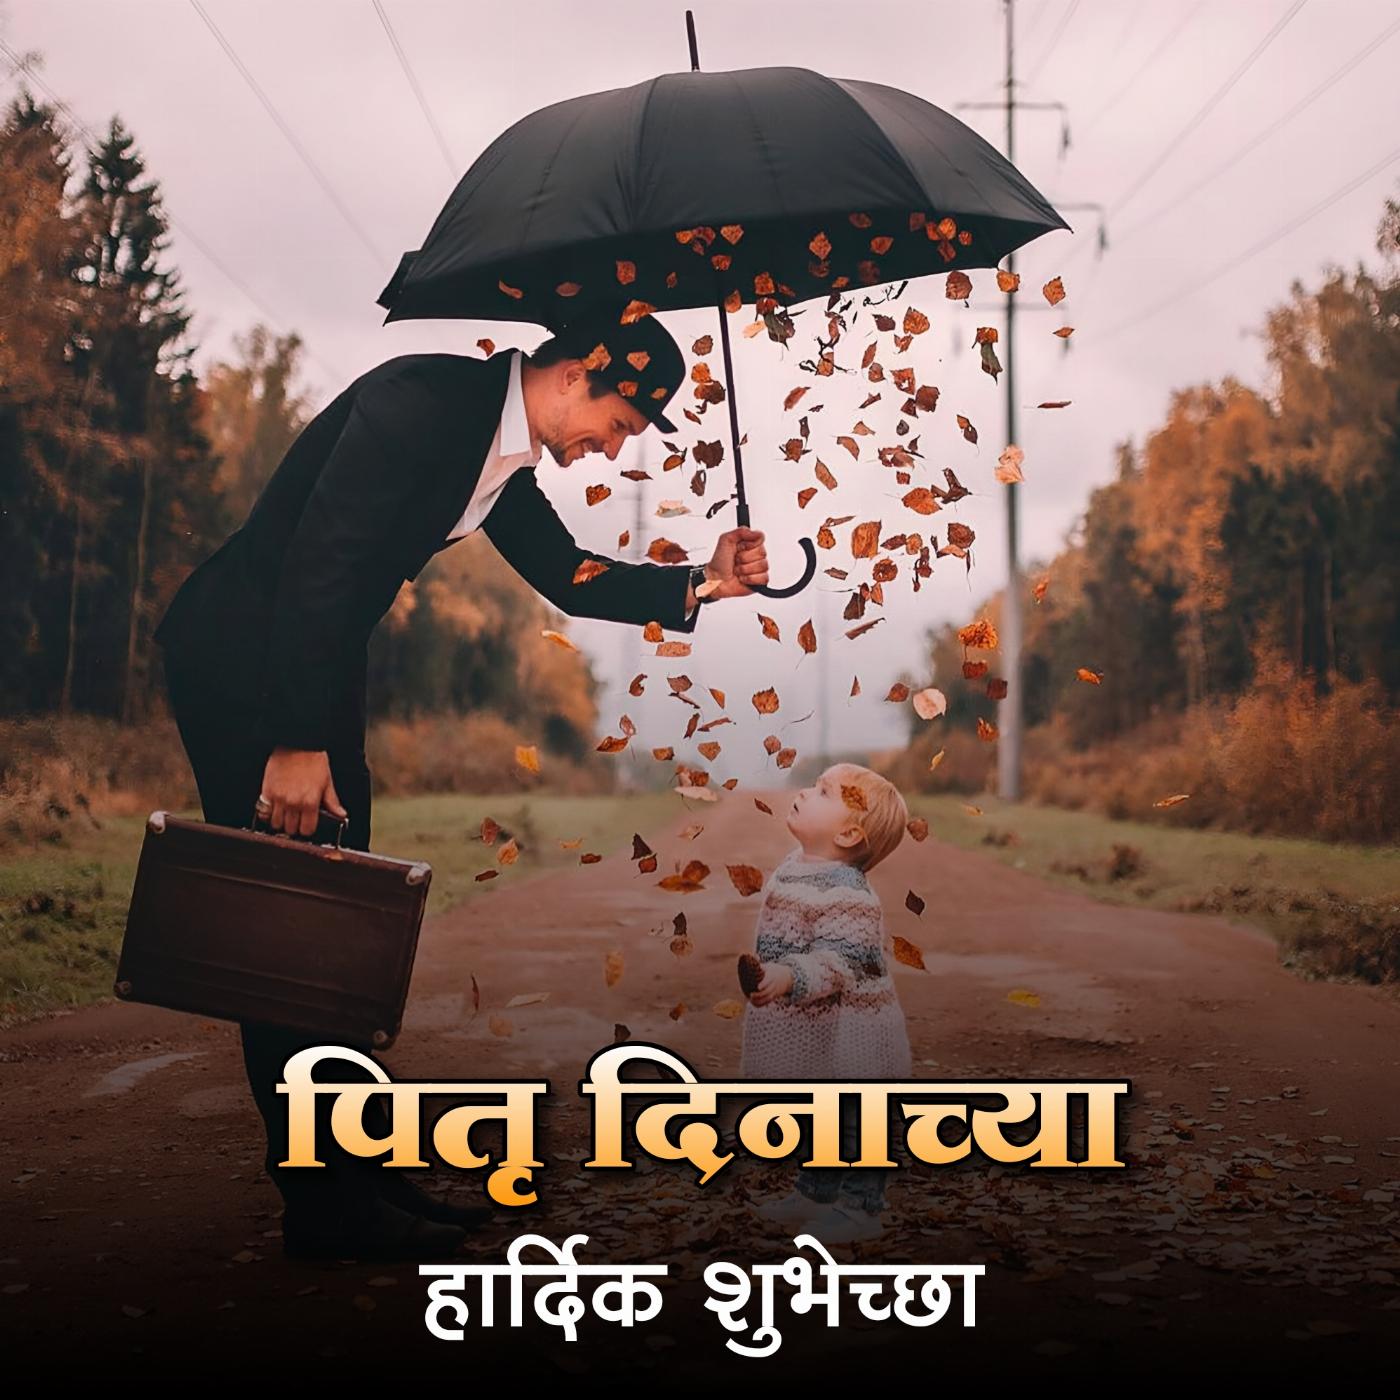 Pitrudinachya Hardik Shubhechha Images in Marathi Download